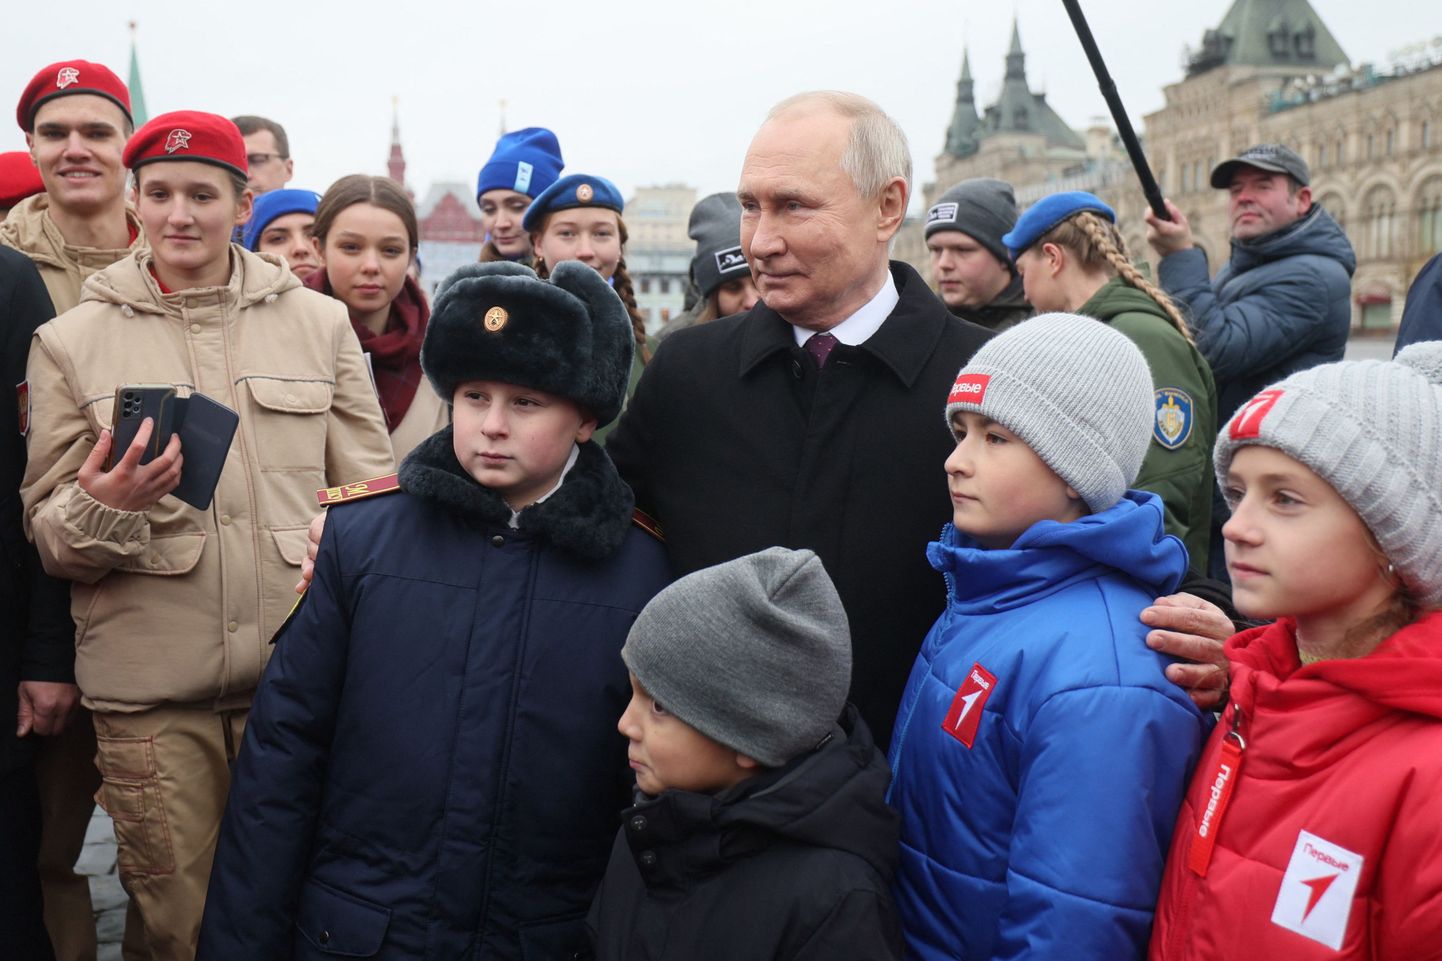 Vanemaa propagandakanali Sputnik levitatud pilt, kus Venemaa president Vladimir Putin kohtub rahvusliku ühtsuse päeva puhul Punasel väljakul rahvaga. Pilt on tehtud 4. novembril 2023.